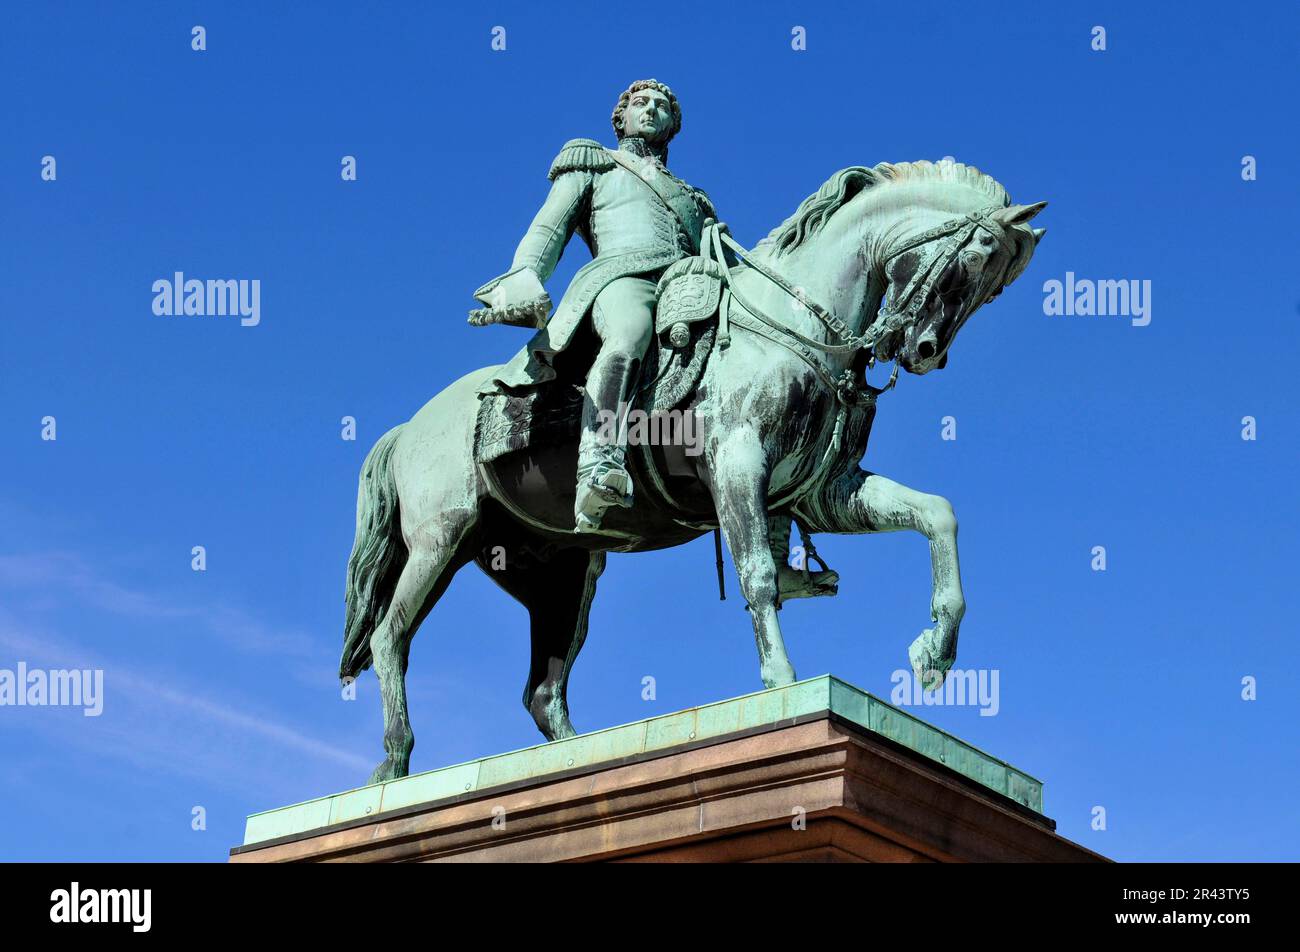 Statua equestre del re Carlo III Giovanni, Castello, Det kongelige slott, Castello della città reale, Oslo, Norvegia Foto Stock